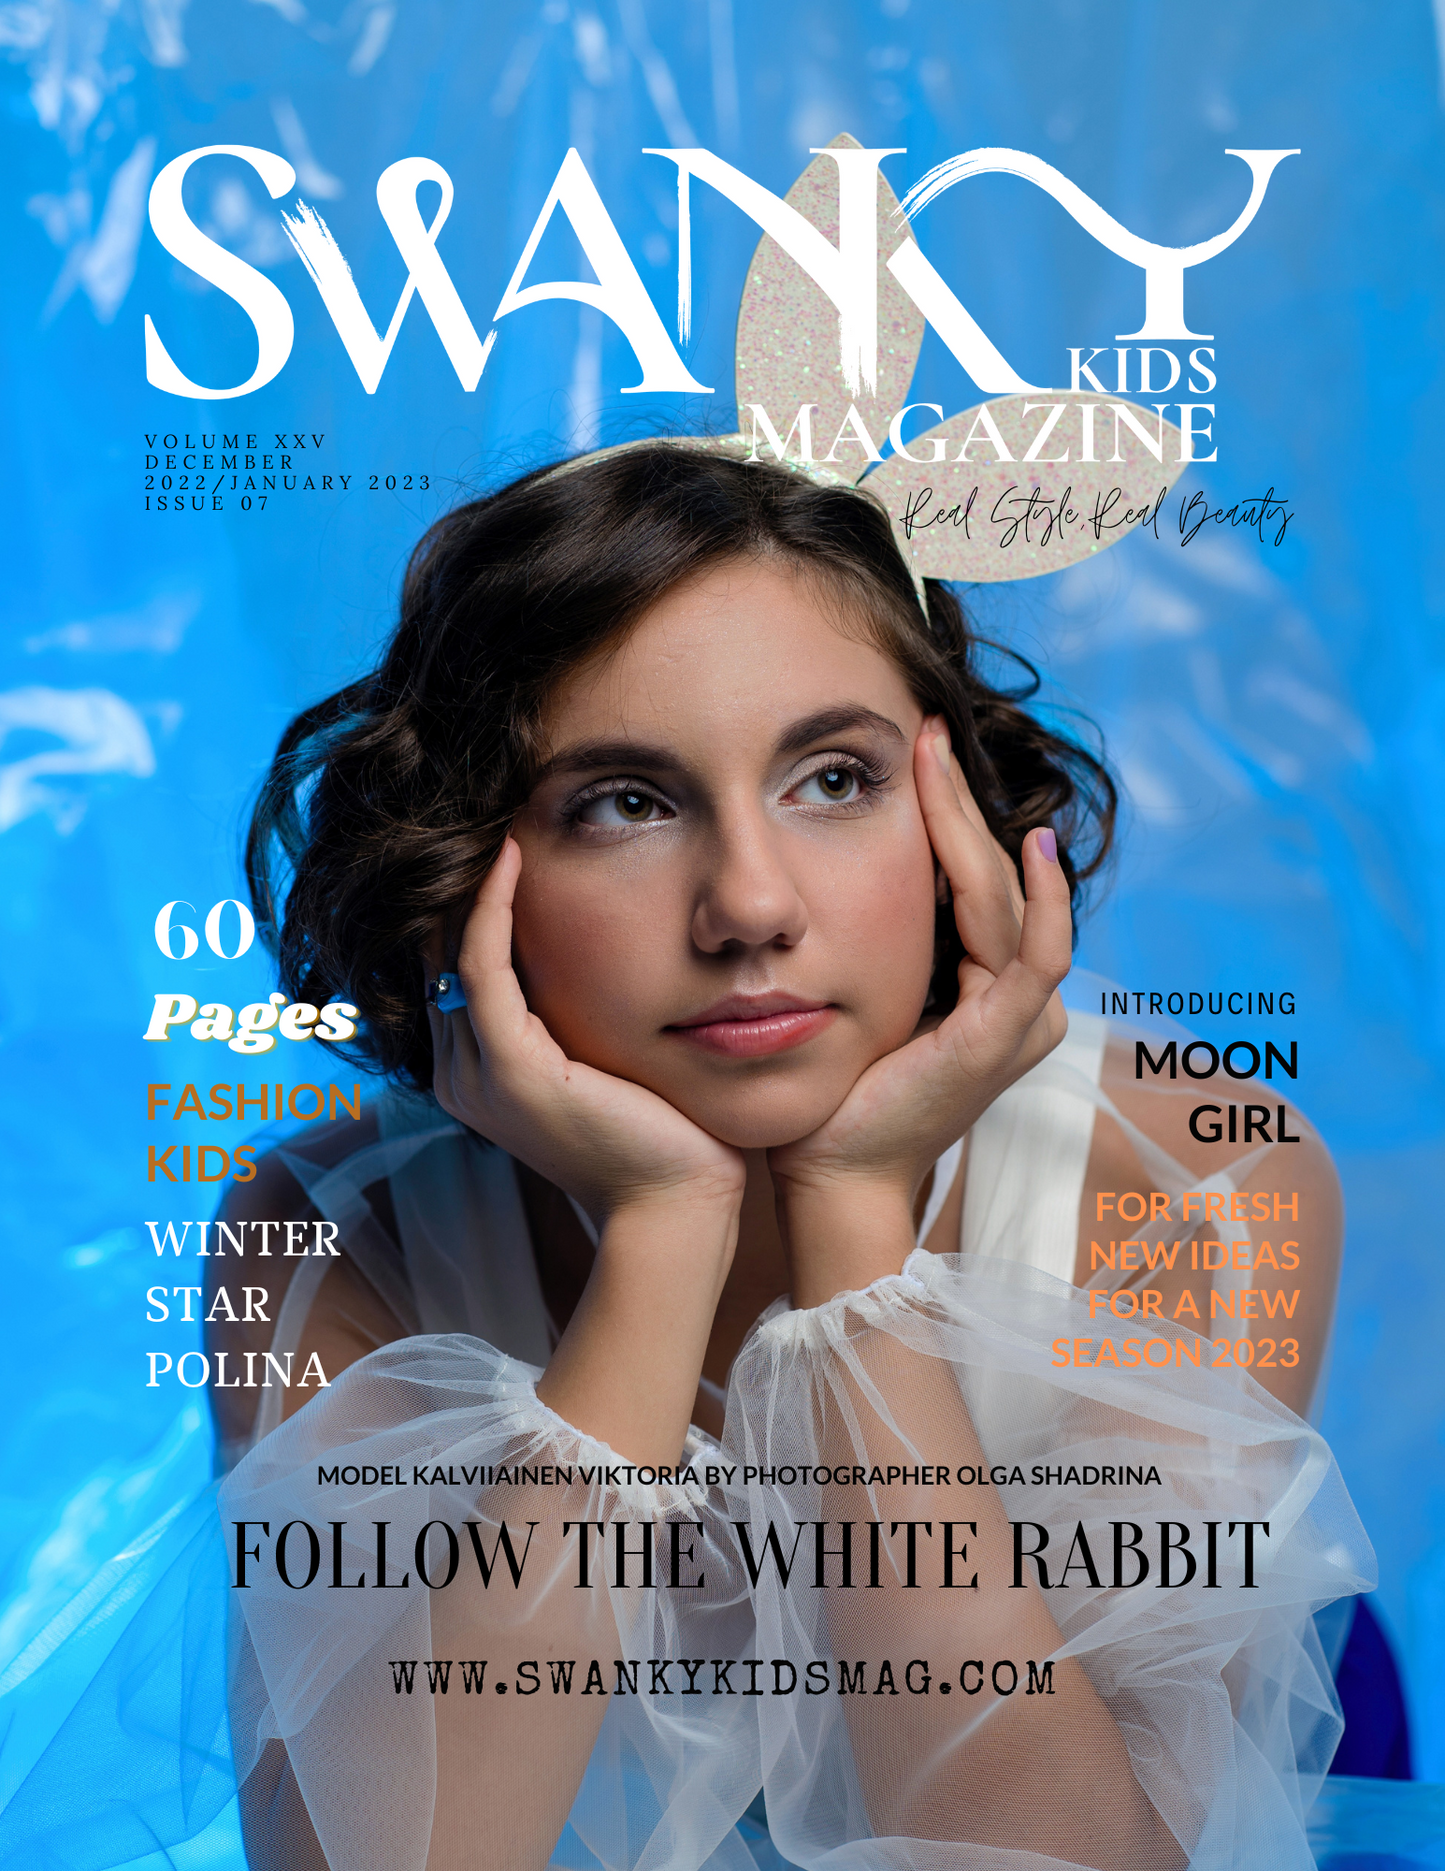 Swanky Kids Editions Dec/Jan 2022/2023 VOL XXV Issue 07